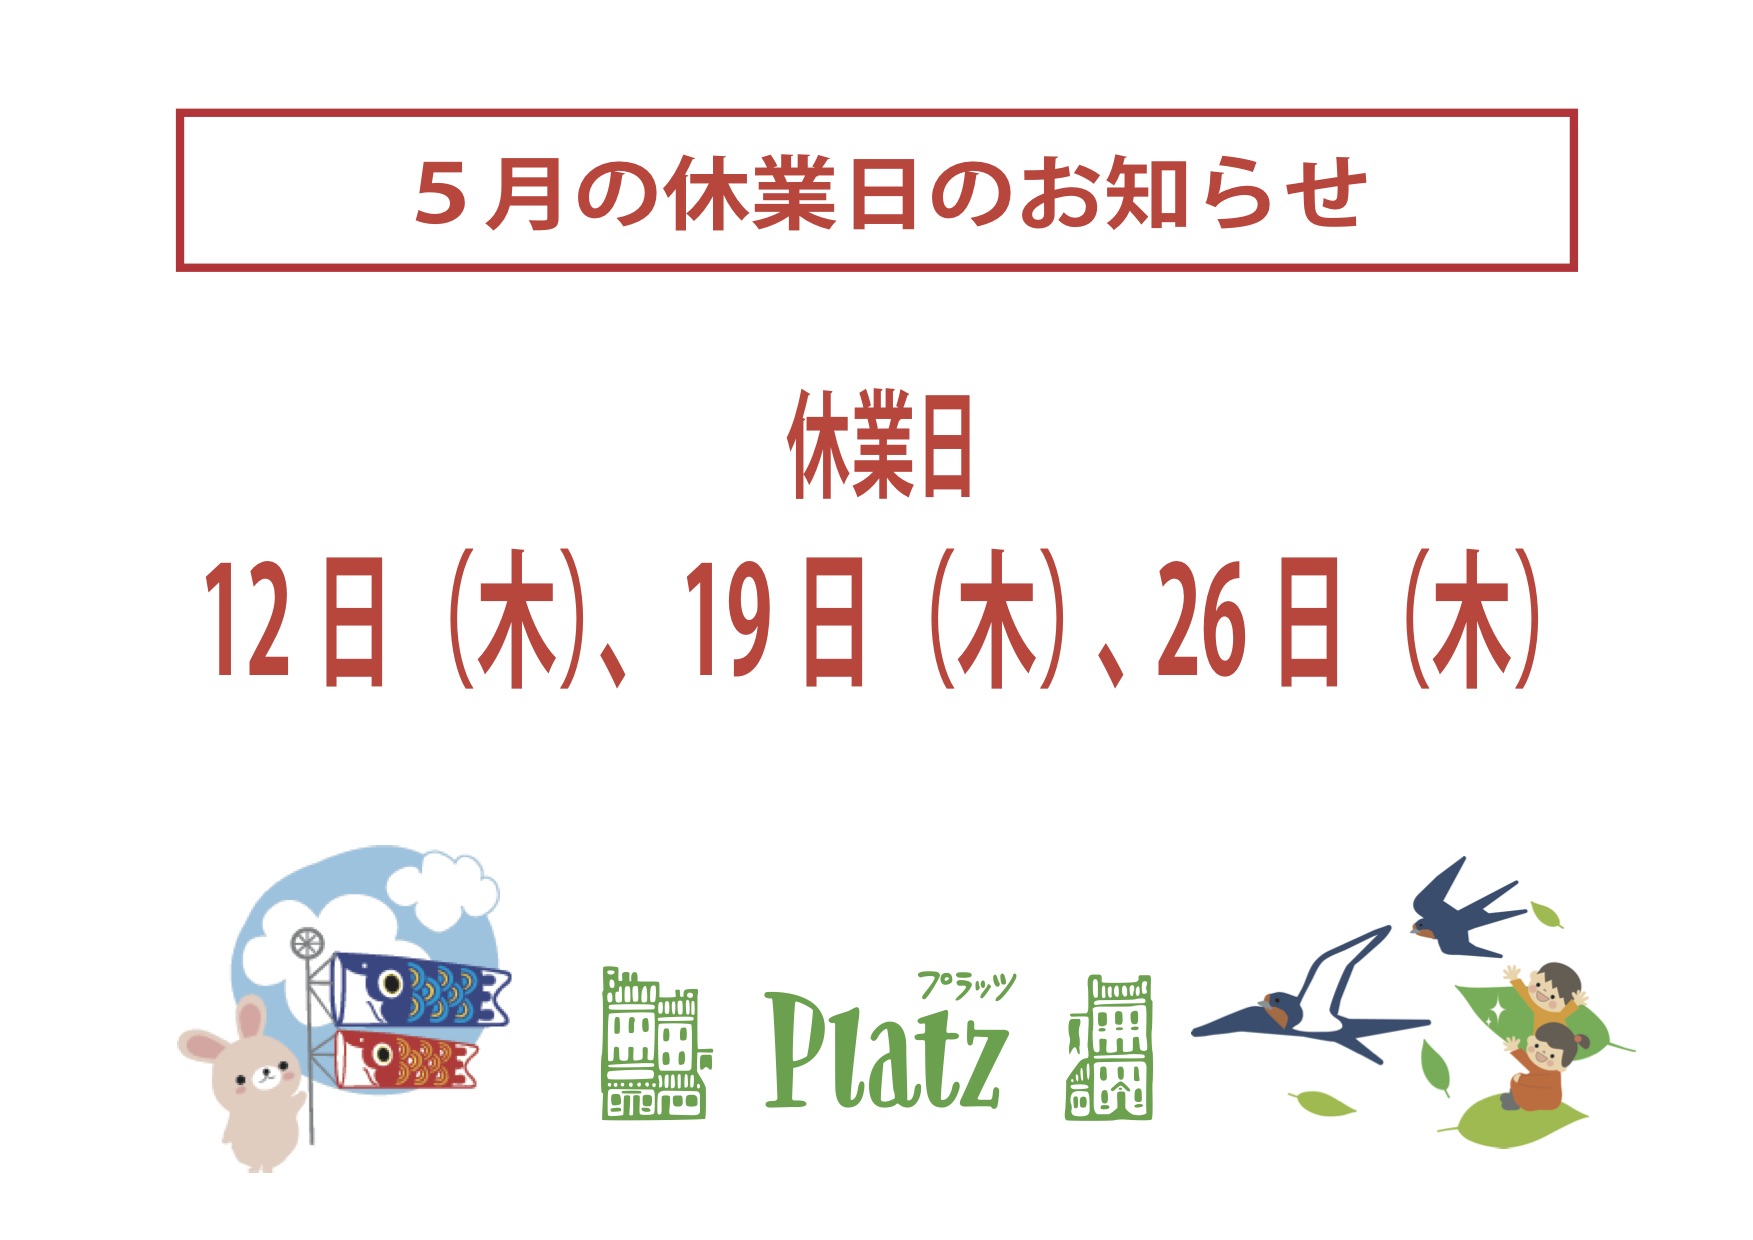 http://www.kyoto-platz.jp/news/images/2022.5%E6%9C%88%E4%BC%91%E6%A5%AD%E6%97%A5.jpg